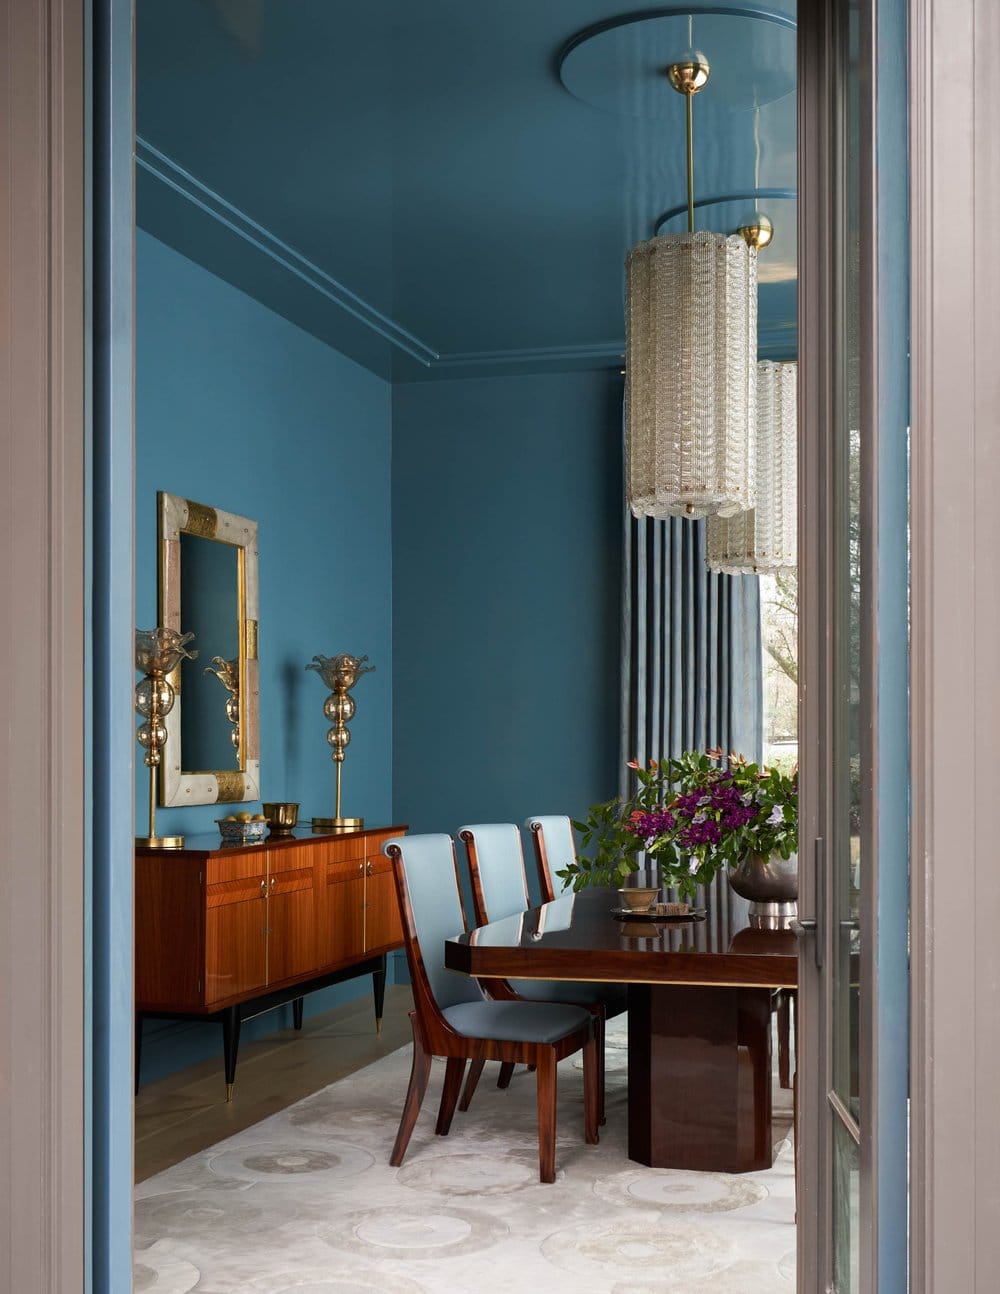 Jenkins Interiors - Nathan Schroder Photographer -dining room - dining room decor - dining room decor - midcentury modern